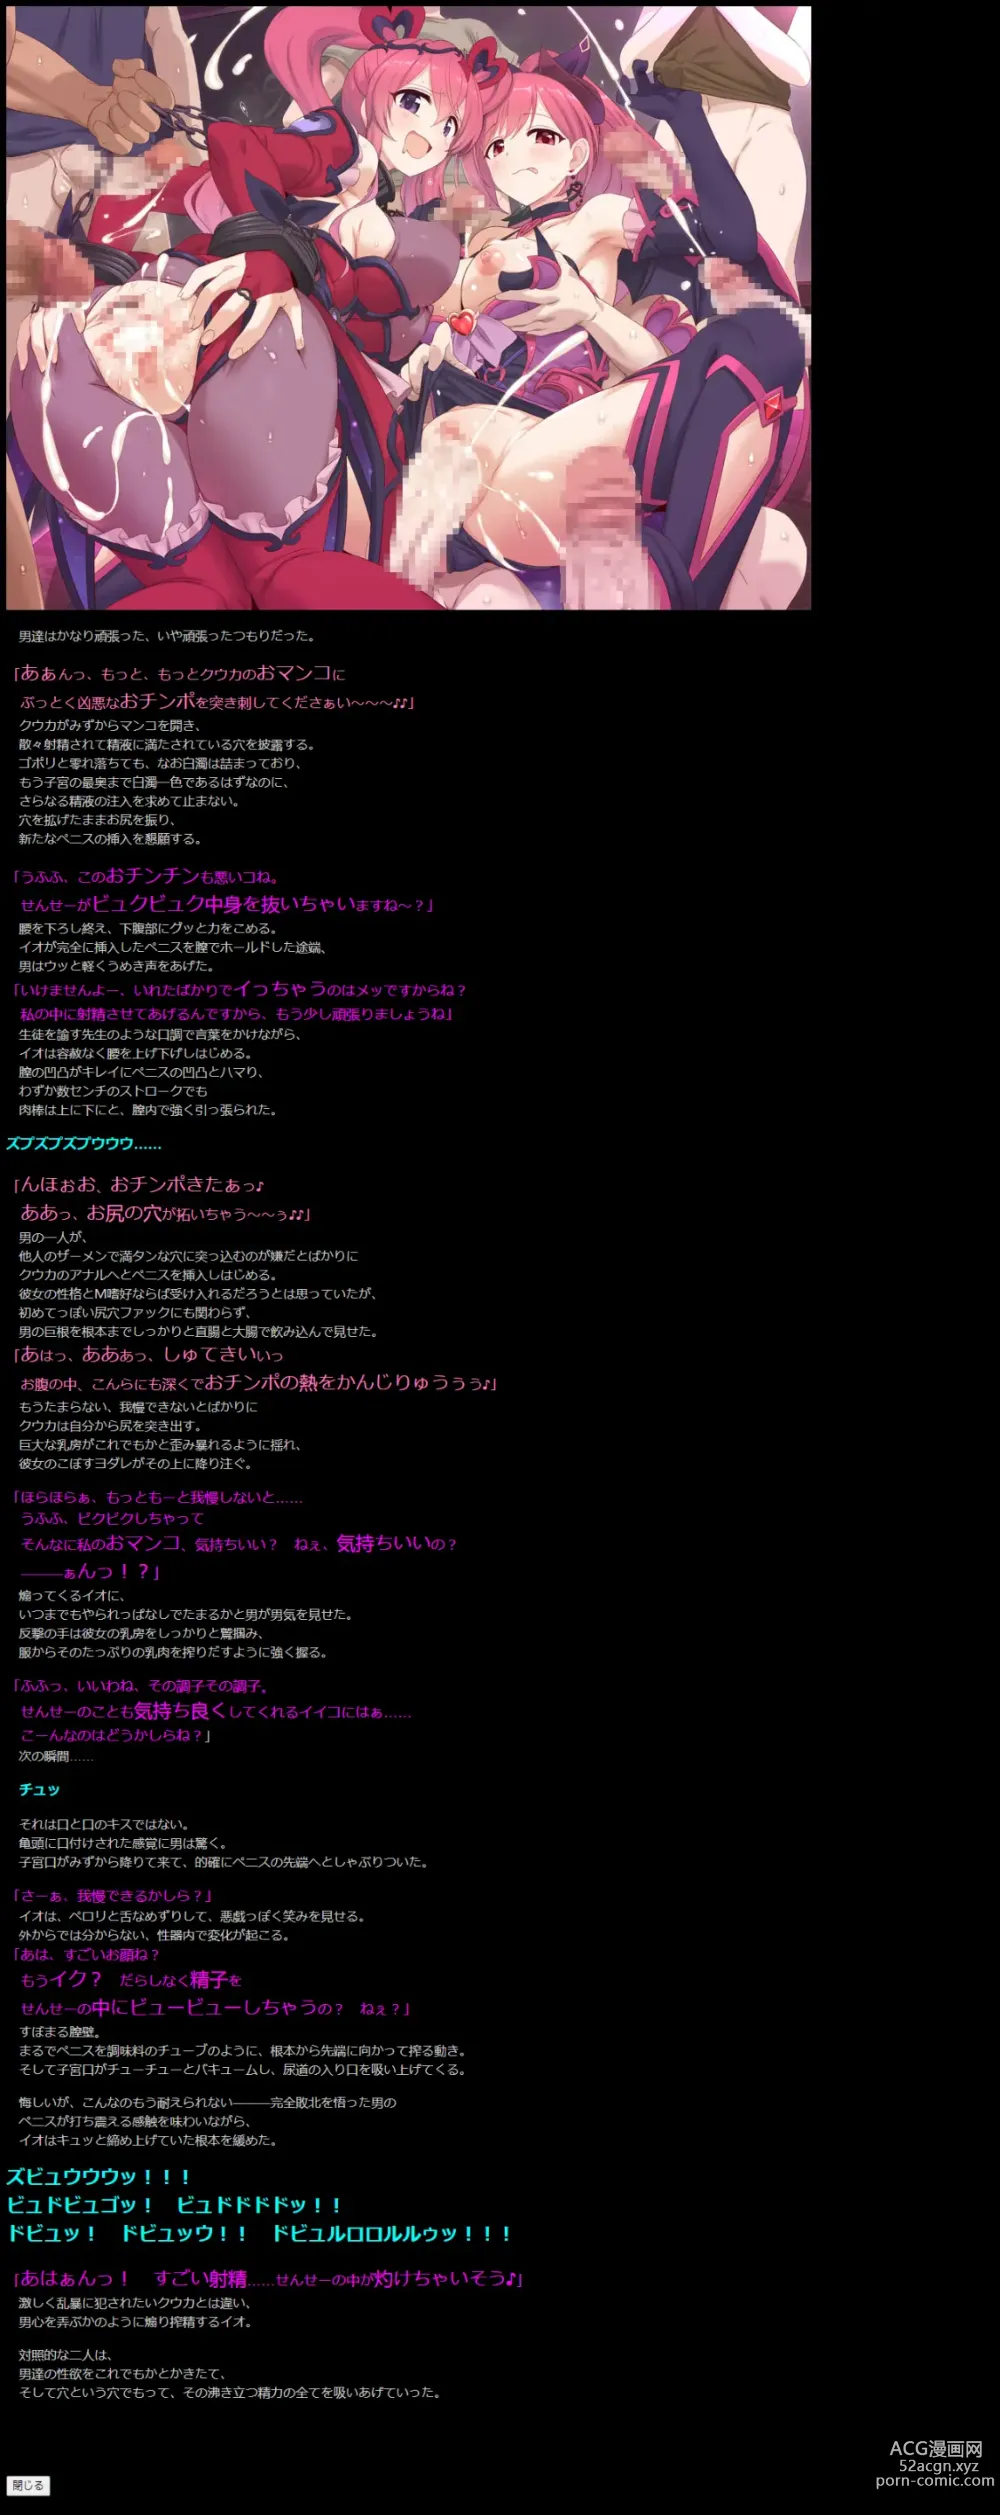 Page 14 of doujinshi Yuumei Chara Kannou Shousetsu CG Shuu No. 423!! Princess Connect Re:Dive 5 HaaHaa CG Shuu